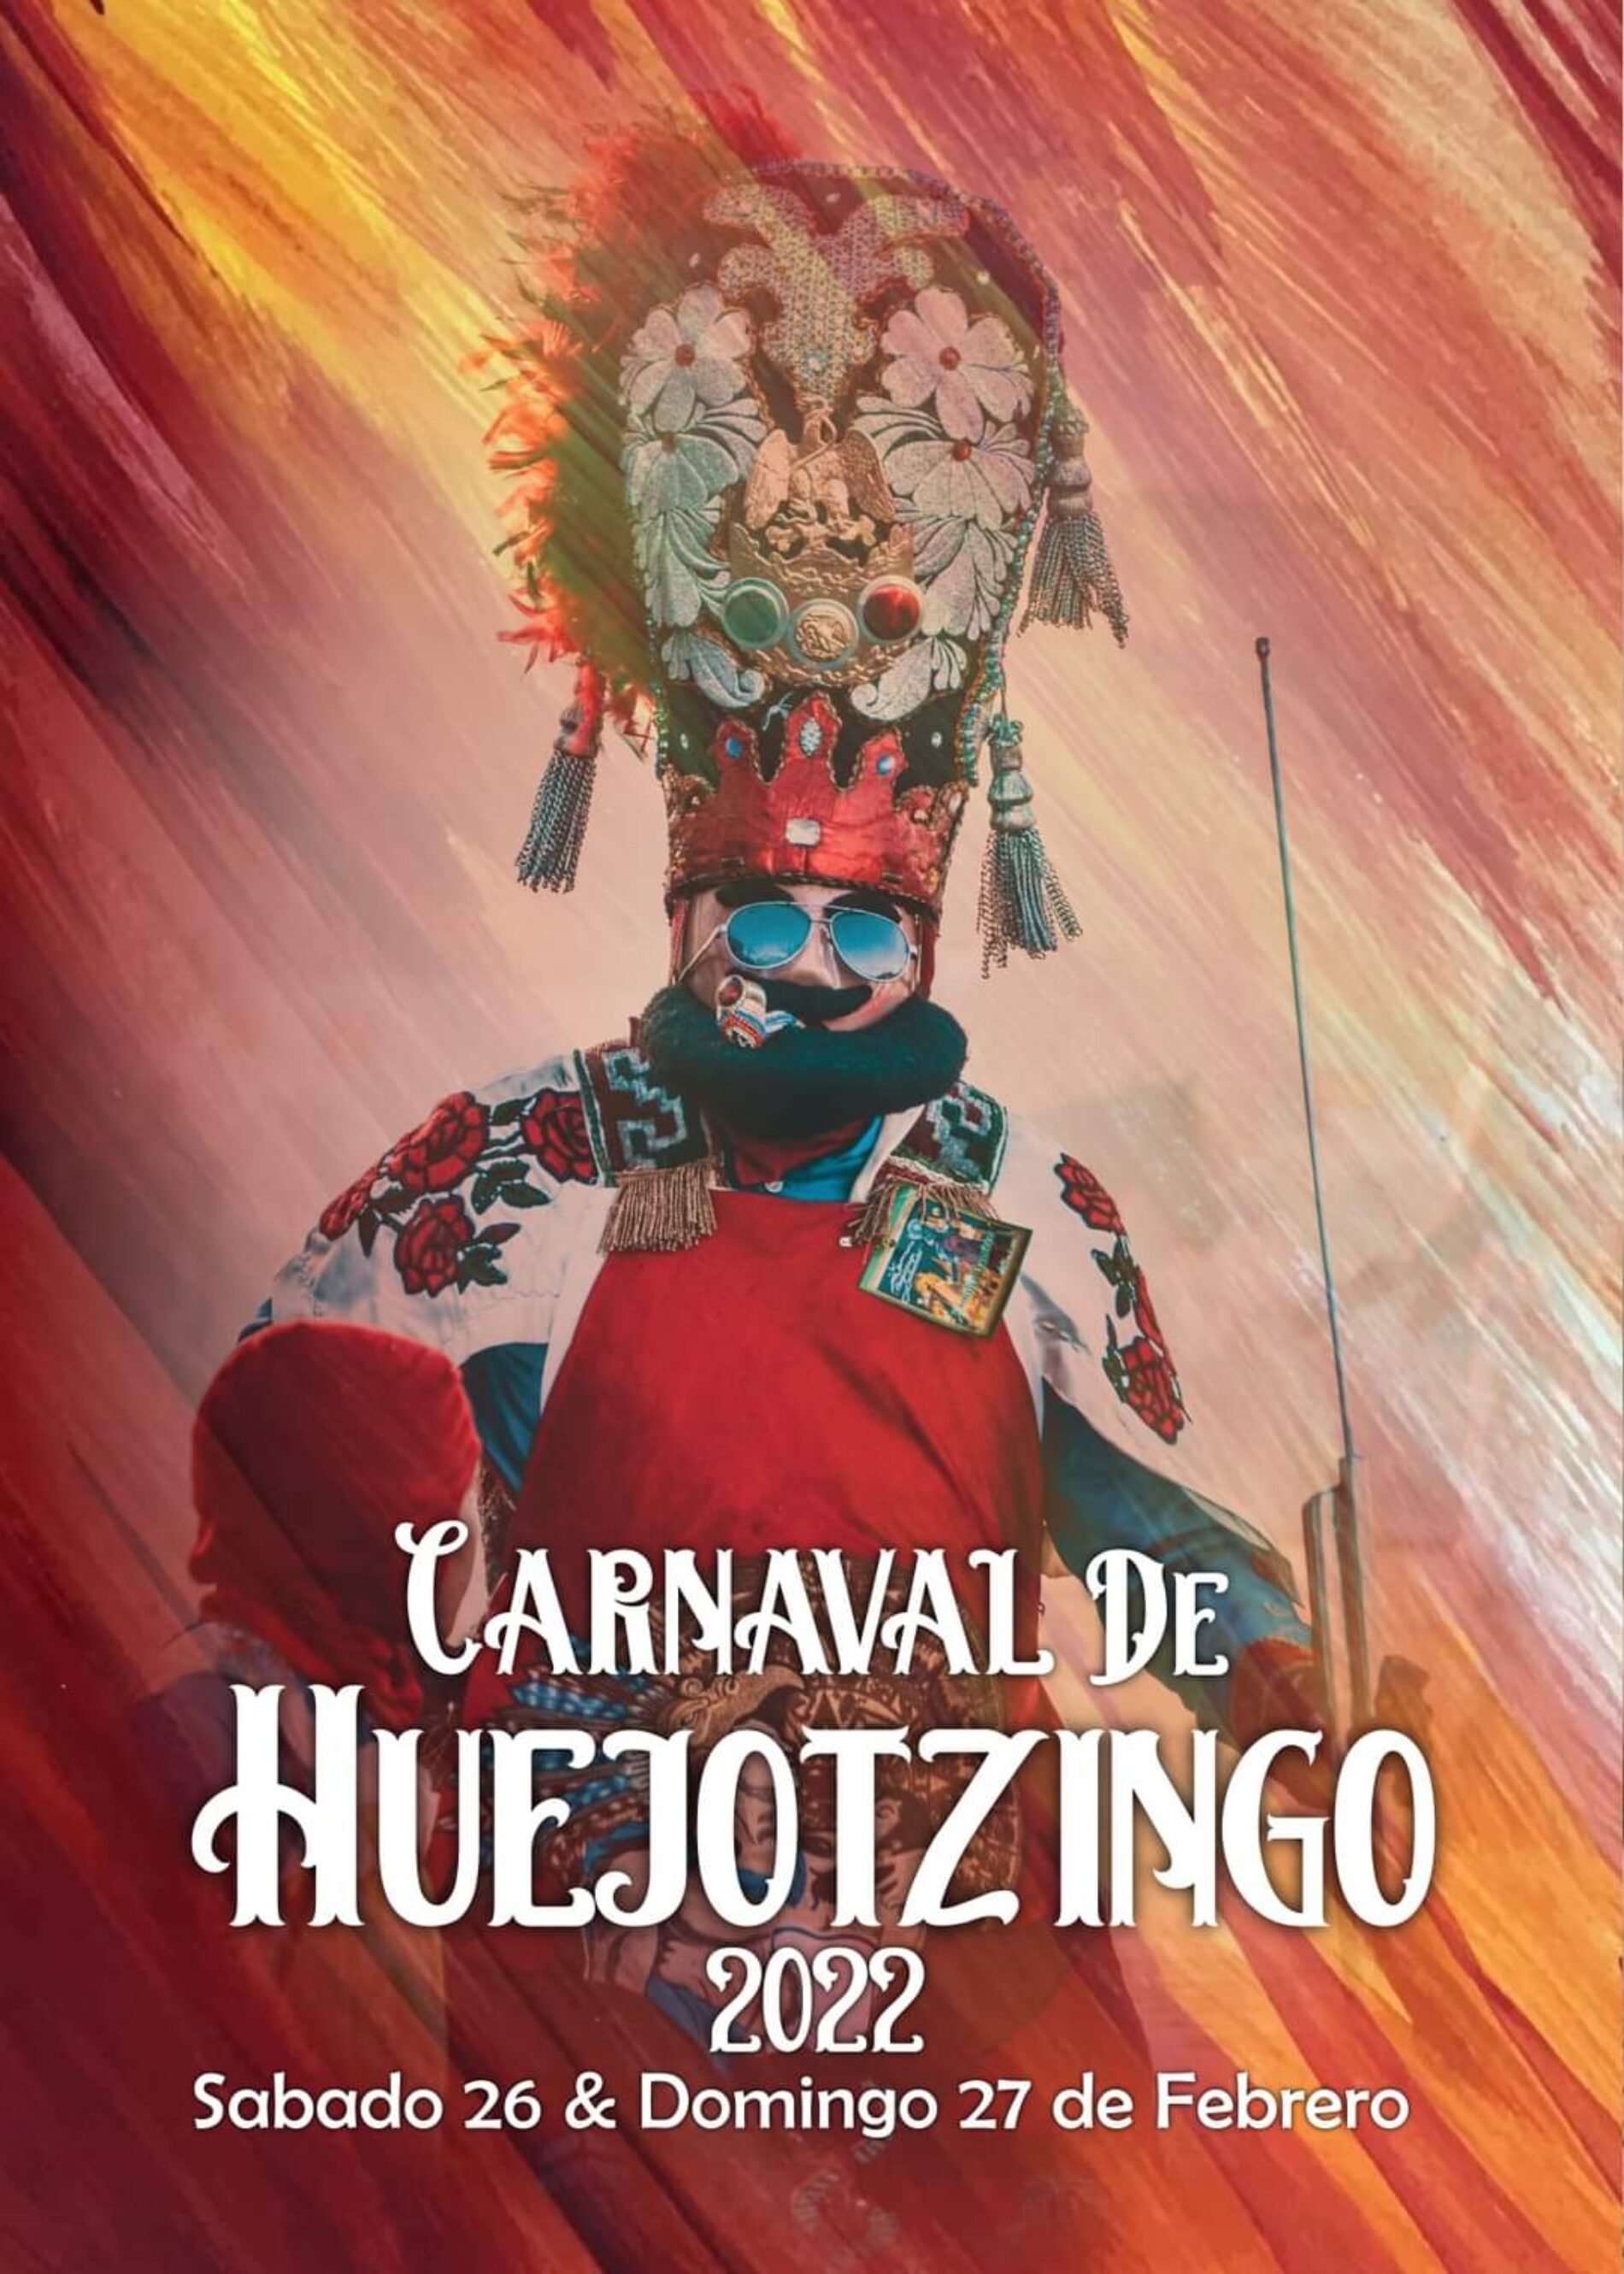 YA VIENE LA ÉPOCA DE CARNAVAL EN HUEJOTZINGO